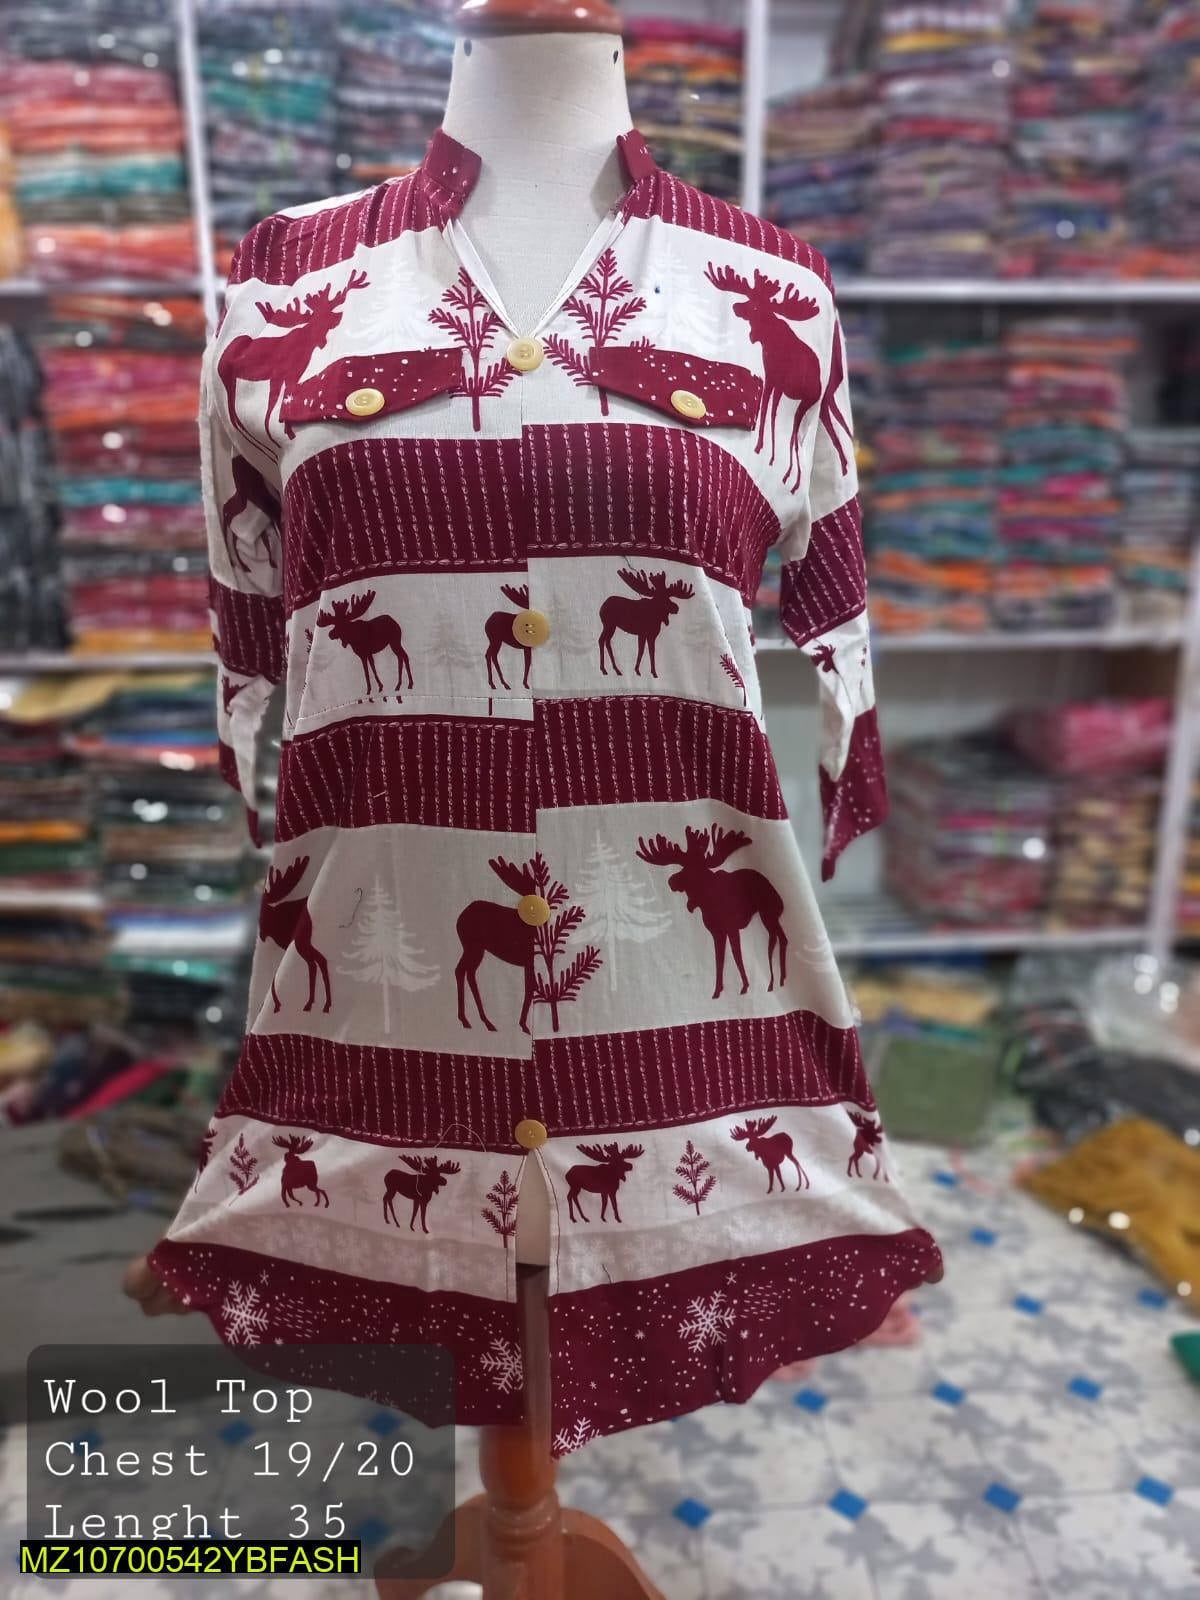 Women Fluent Fabric Dress Shirts Islamabad - Pakistan 